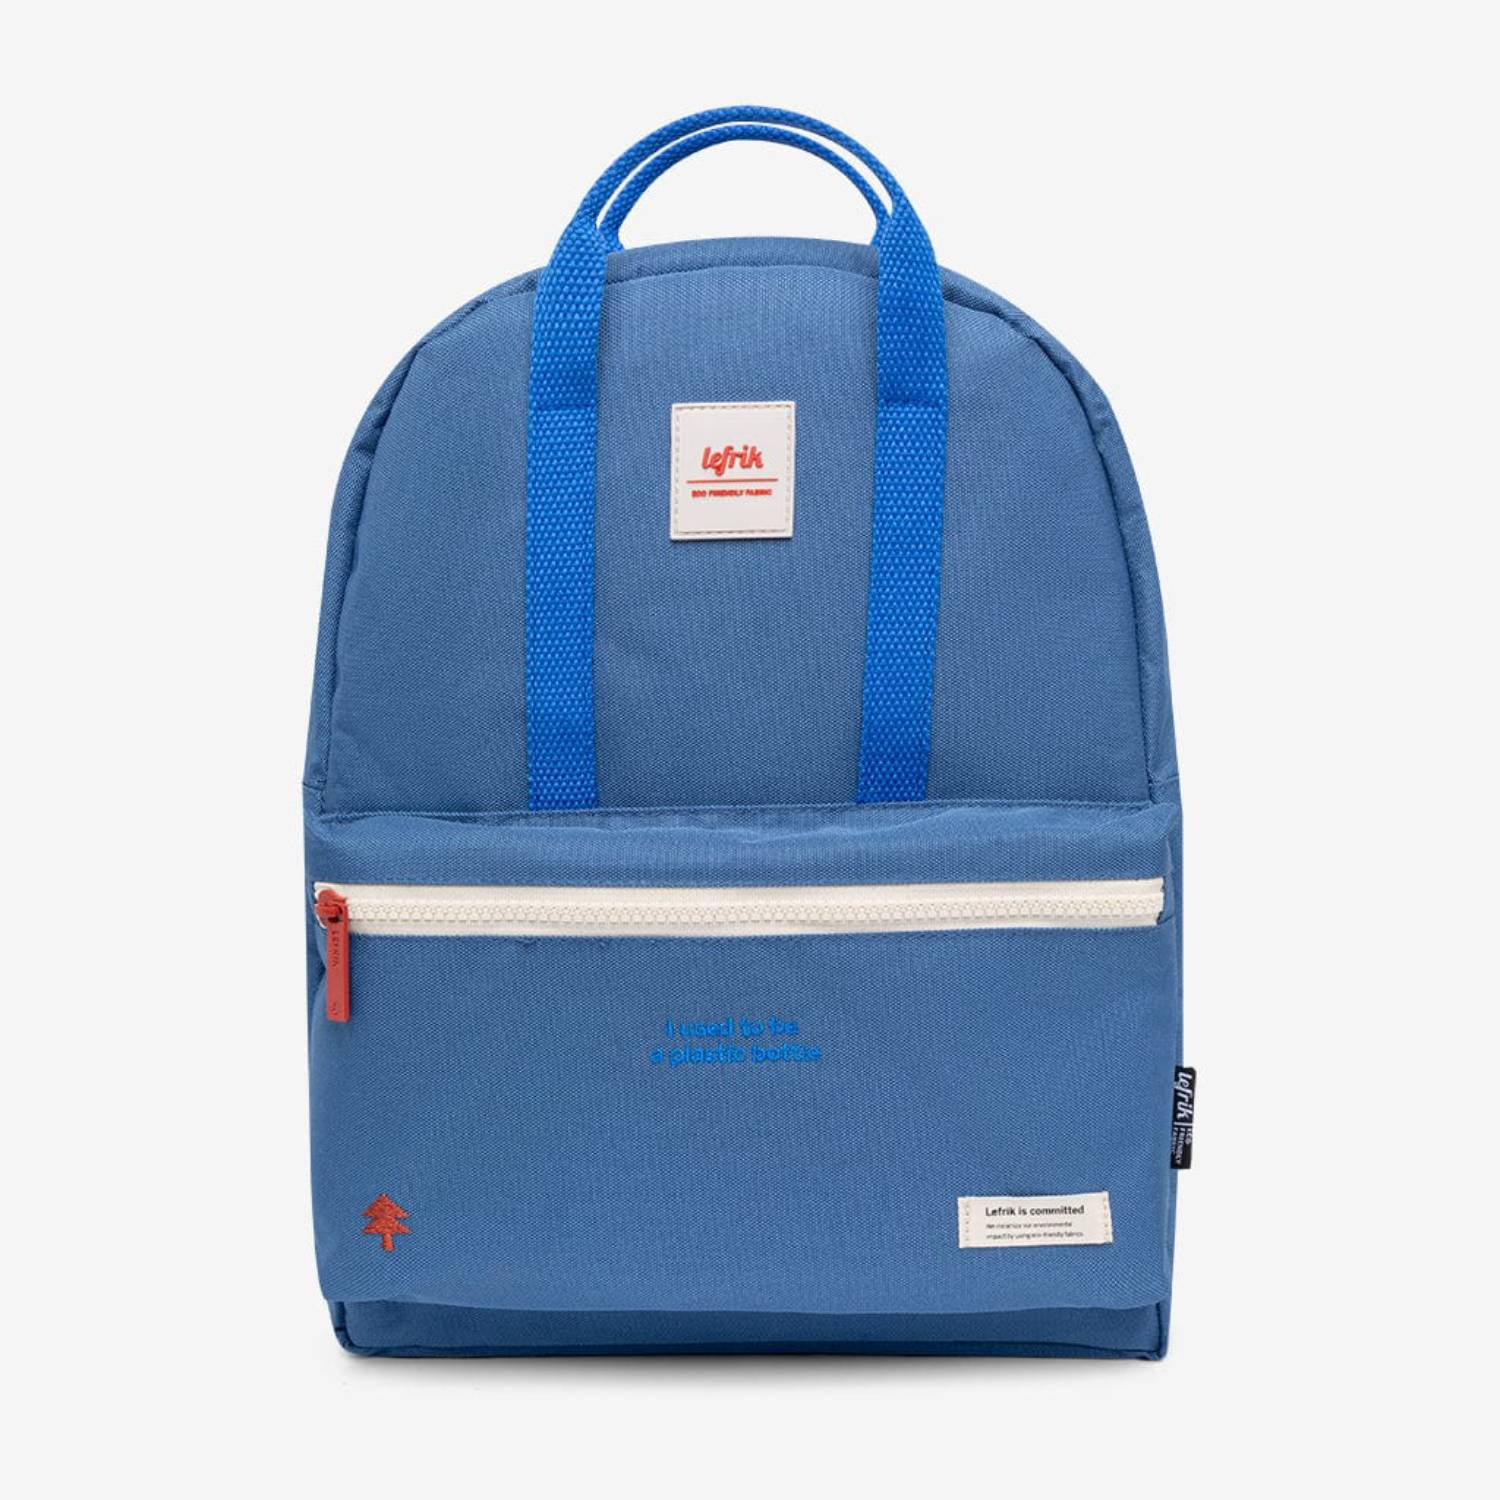 Lefrik September Classic backpack in blue